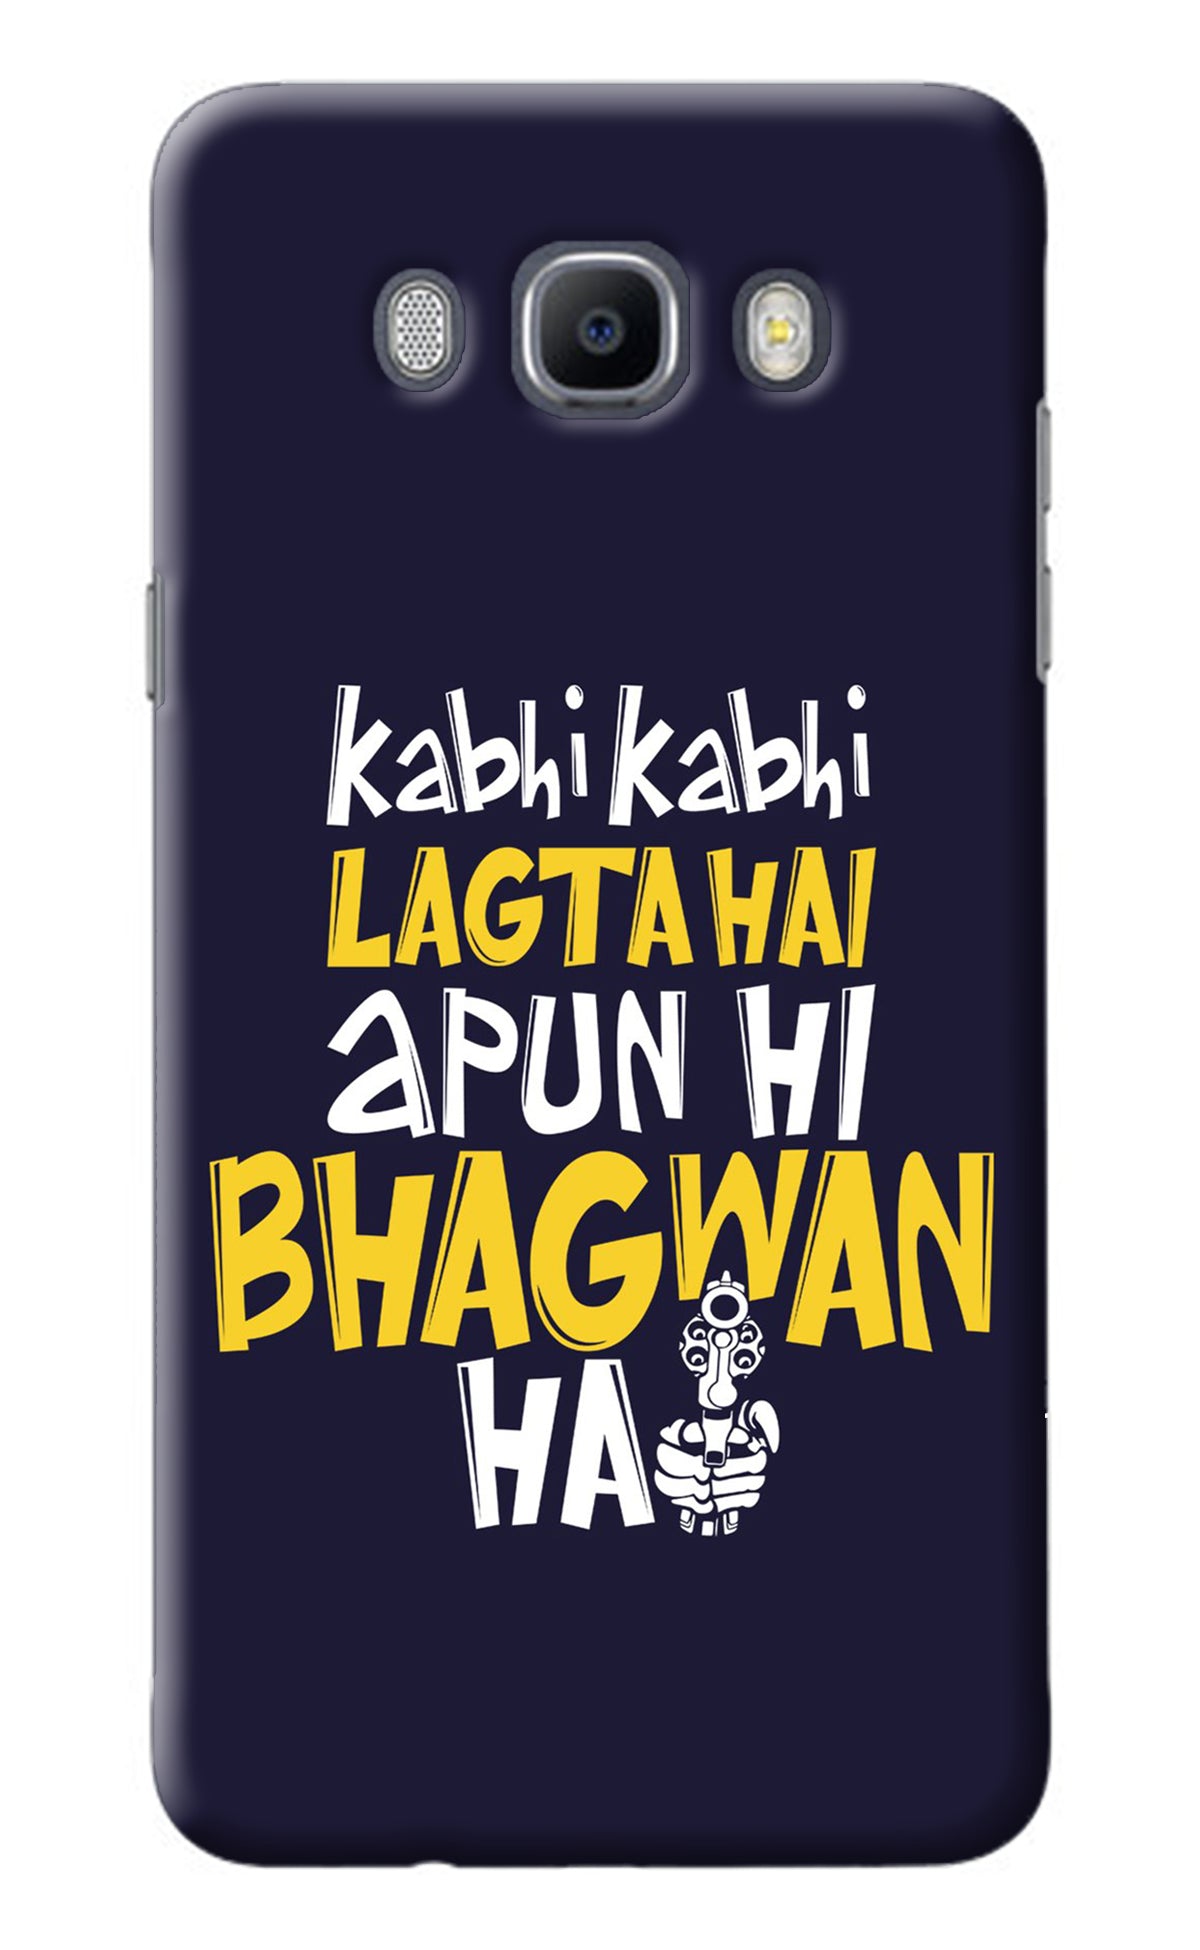 Kabhi Kabhi Lagta Hai Apun Hi Bhagwan Hai Samsung J7 2016 Back Cover